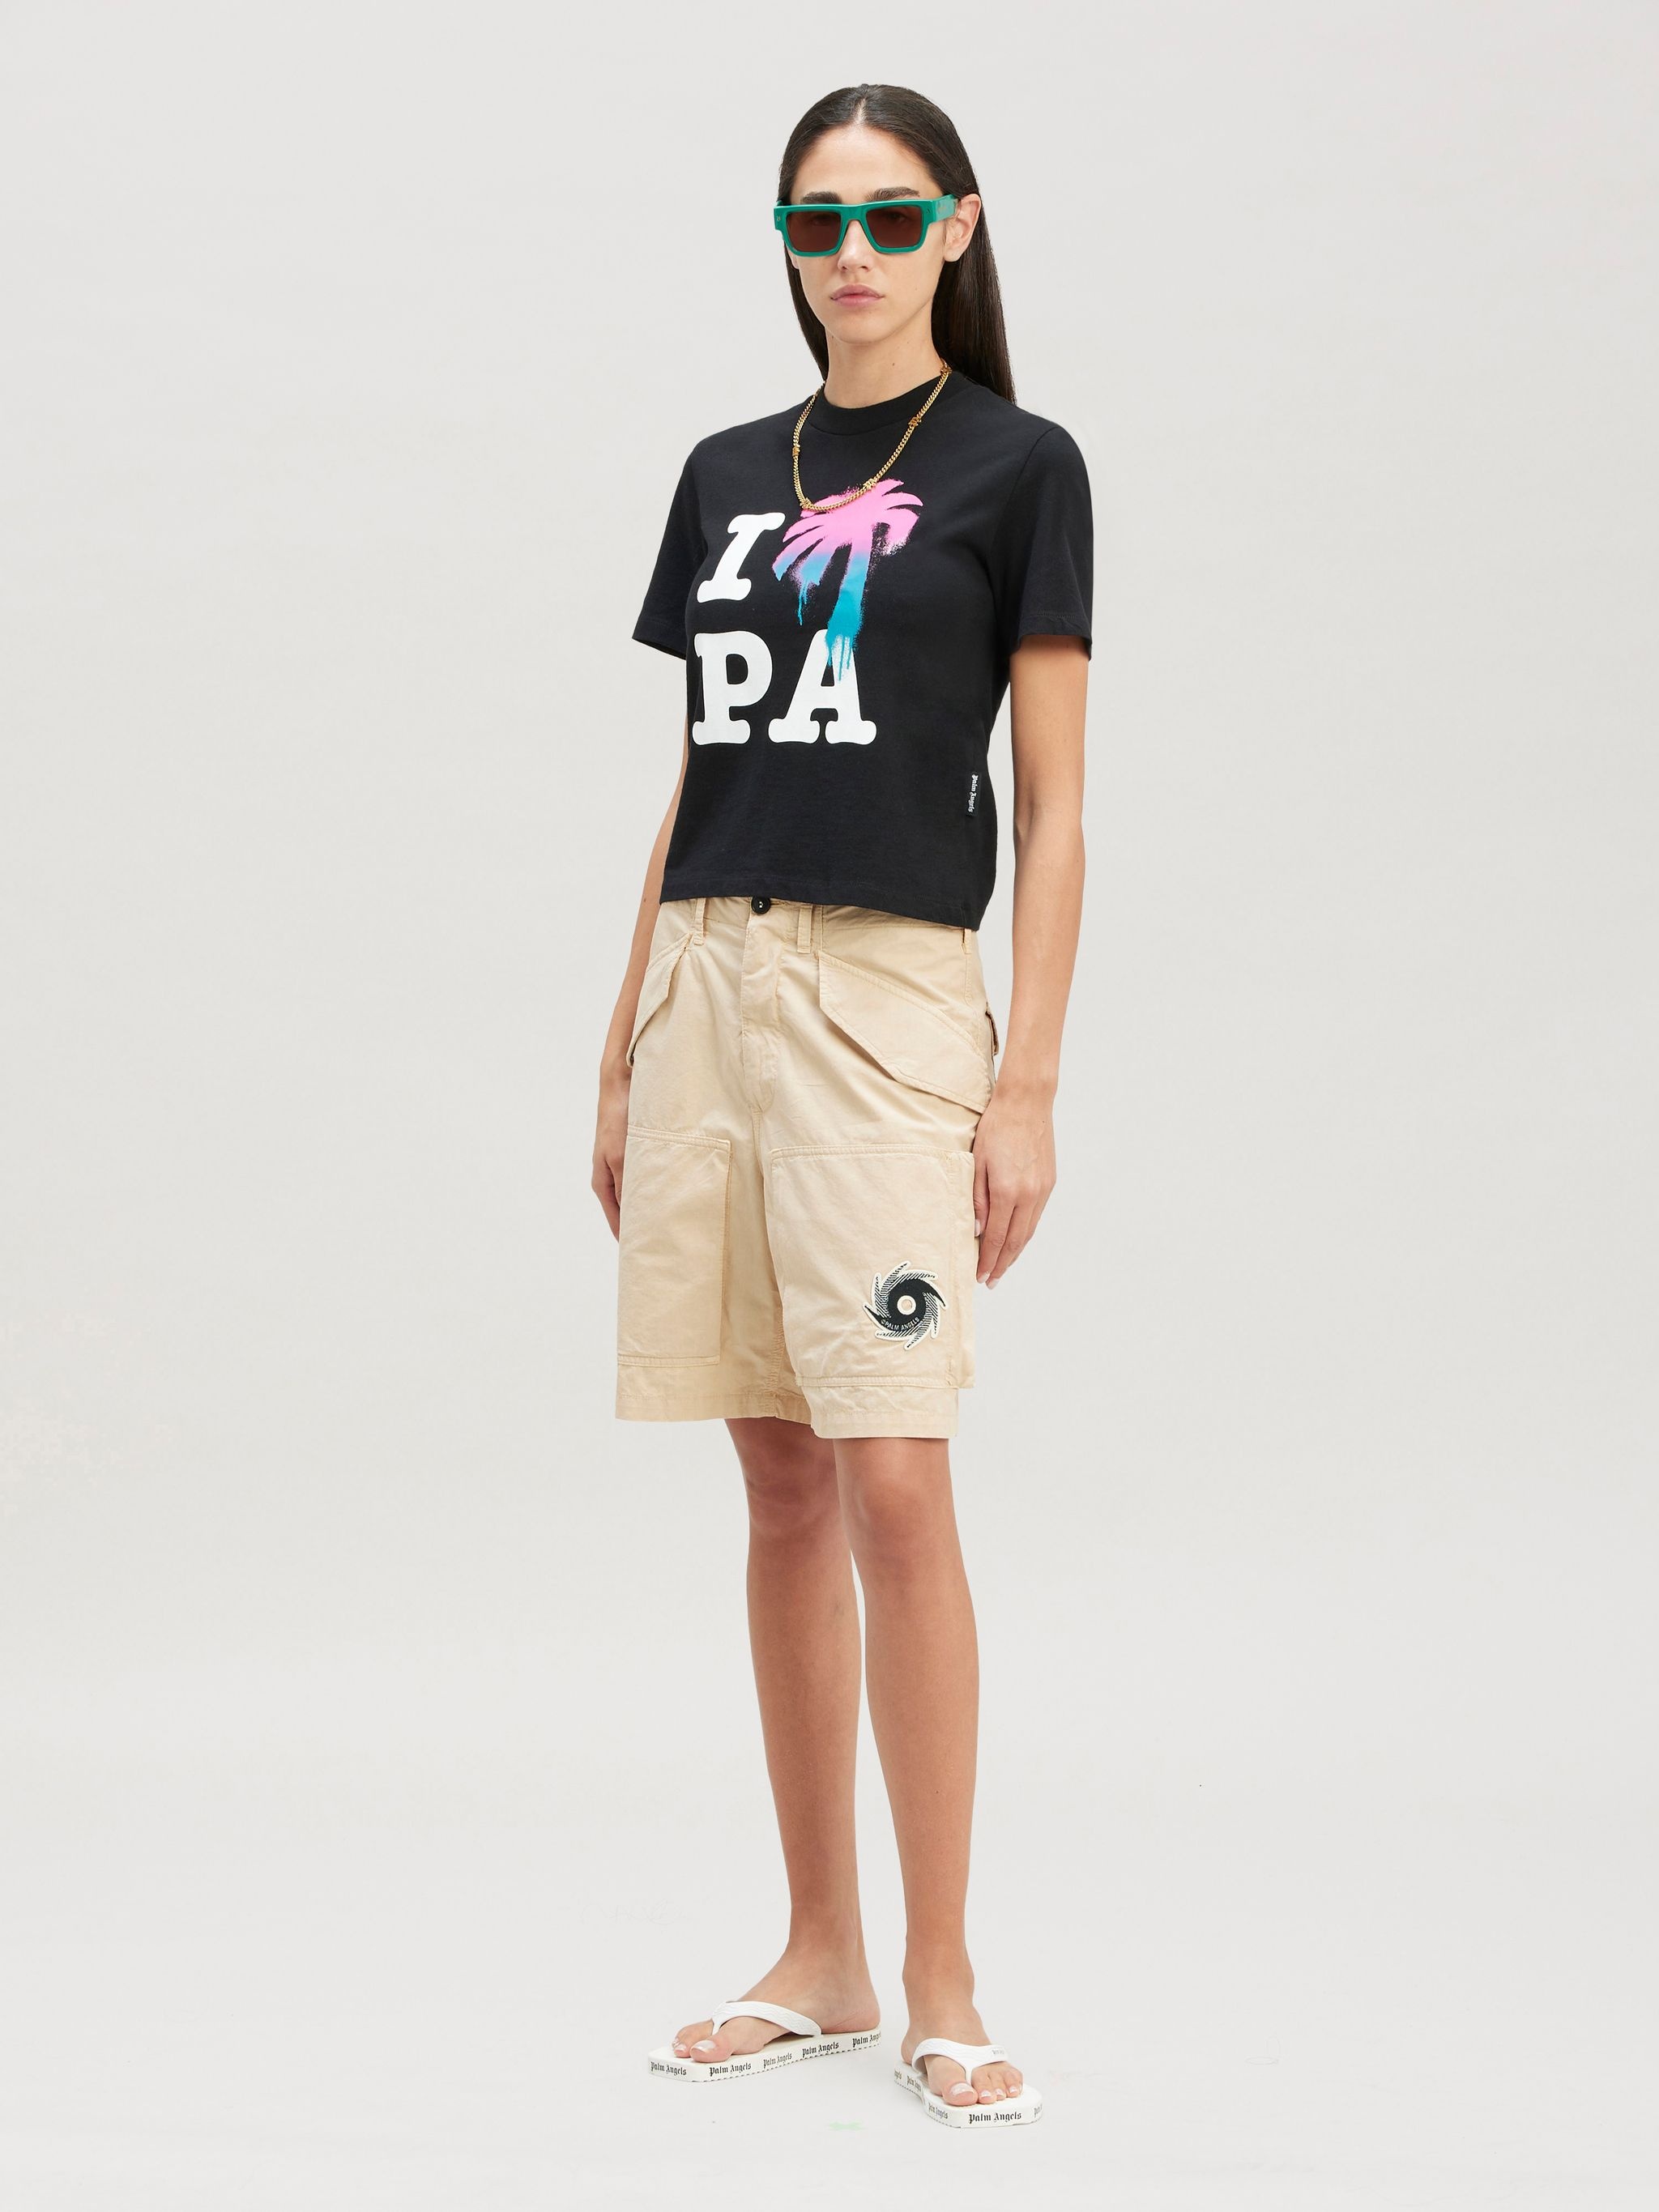 I Love Pa Slim T-shirt - 2